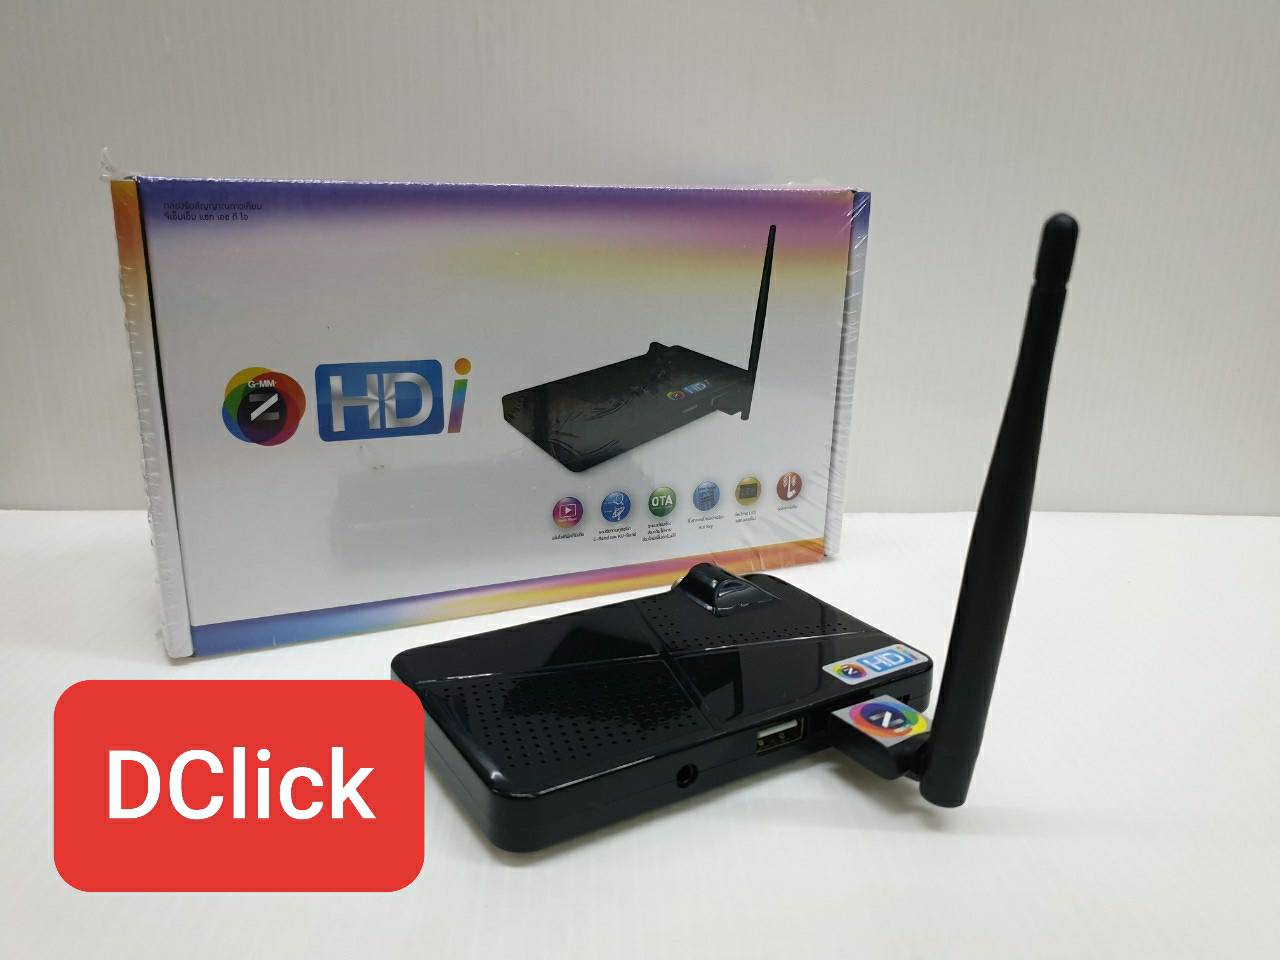 กล่อง GMM Z HDi กล่องรับสัญญาณอินเตอร์เน็ตทีวีและดาวเทียม สามารถดู Youtube ได้และใช้กับจานดาวเทียมได้ทั้ง C-Band และ Ku-Band แถมฟรี! เสา Wifi